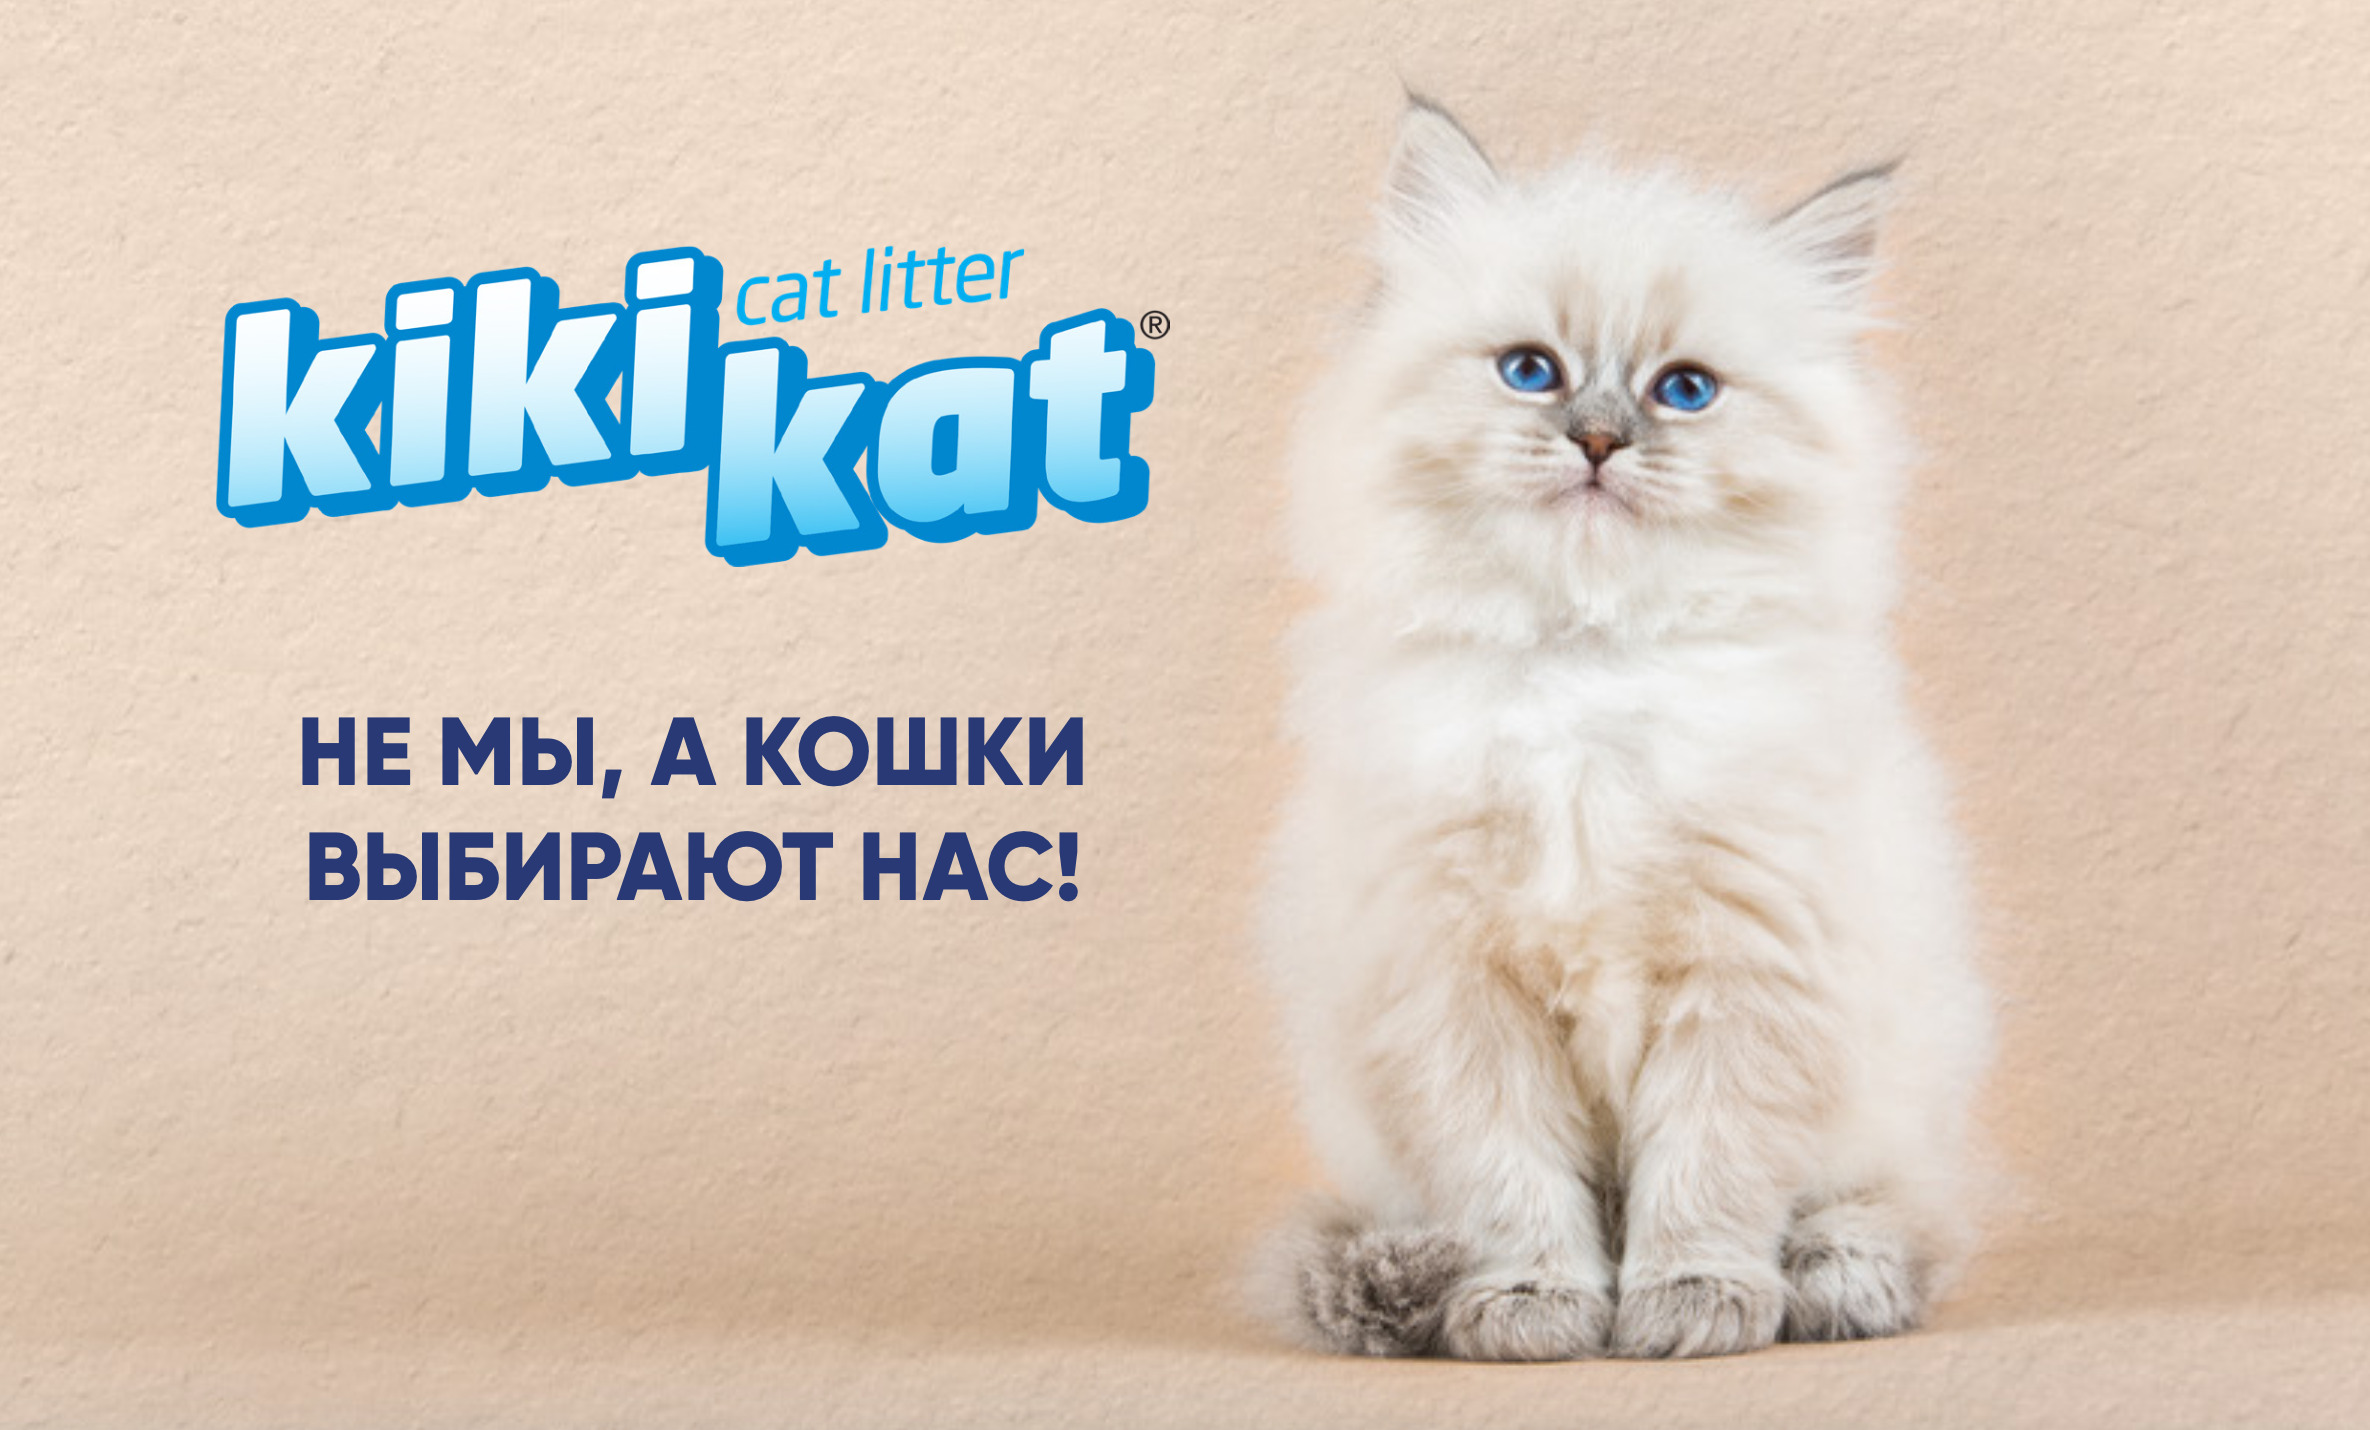 купить Наполнитель для туалета KiKi Kat с доставкой в Калининграде